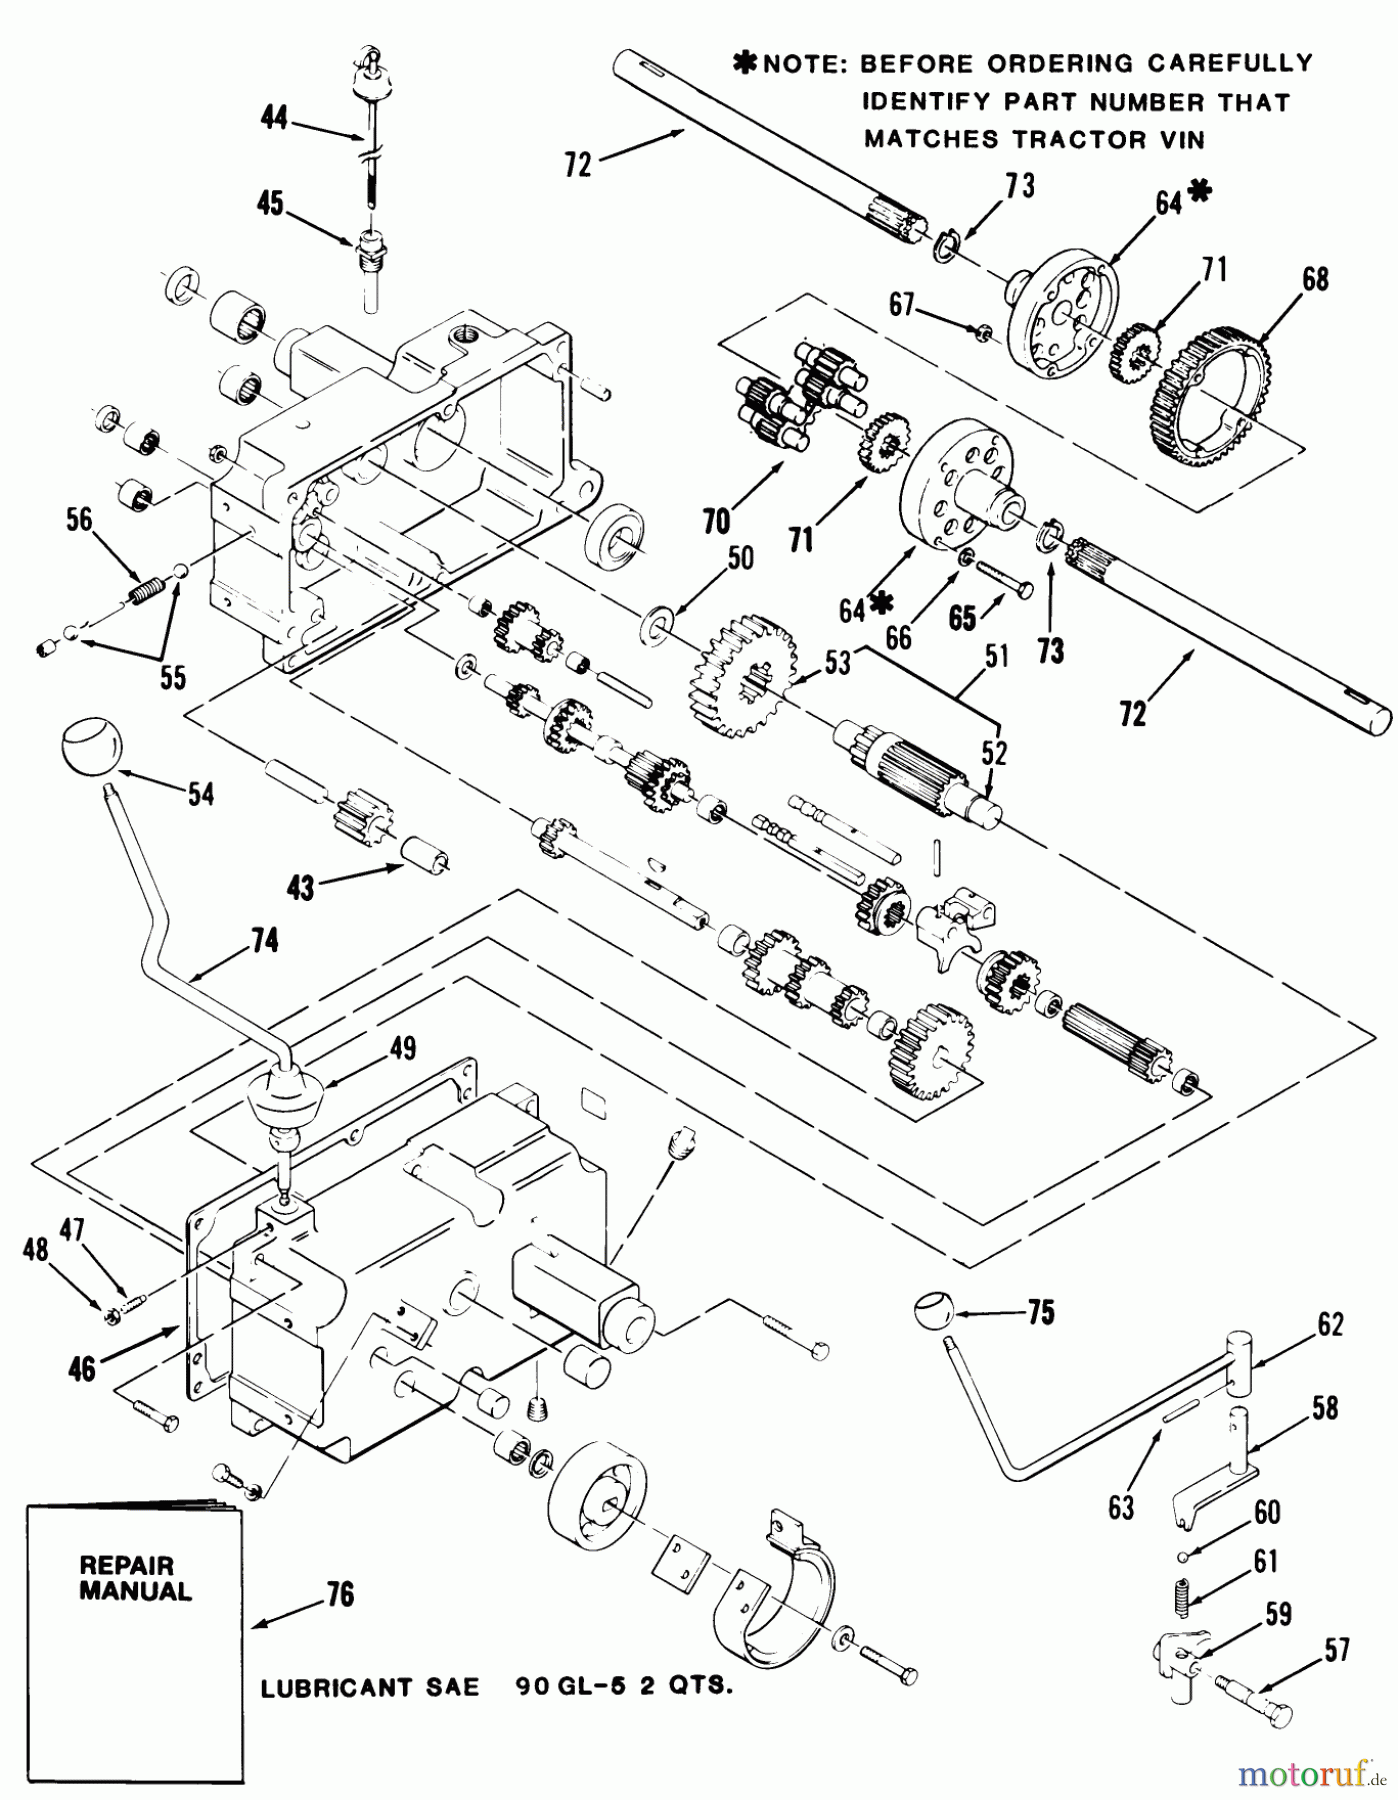  Toro Neu Mowers, Lawn & Garden Tractor Seite 1 21-10K802 (310-8) - Toro 310-8 Garden Tractor, 1986 MECHANICAL TRANSMISSION-8-SPEED #2